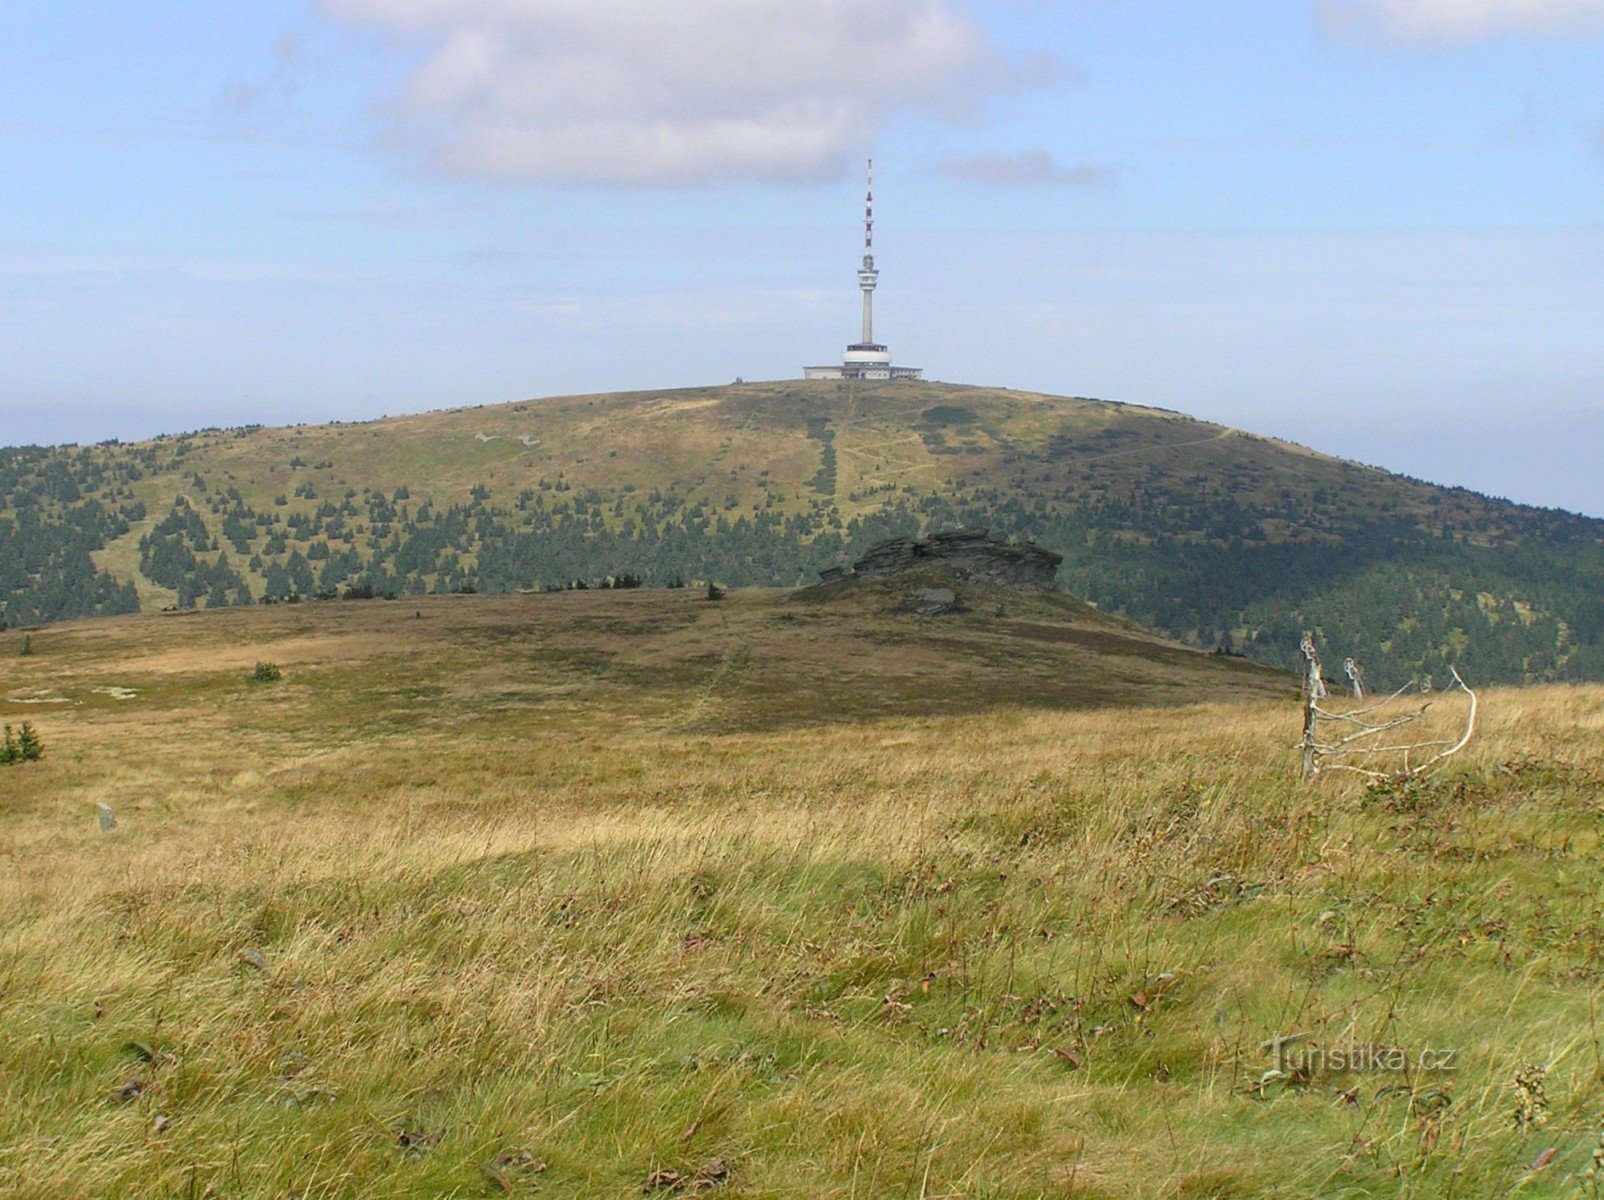 NPR Pradědin korkein sijainti (näkymä Vysoké holasta (1464 m) Peter's Stonesille (14)